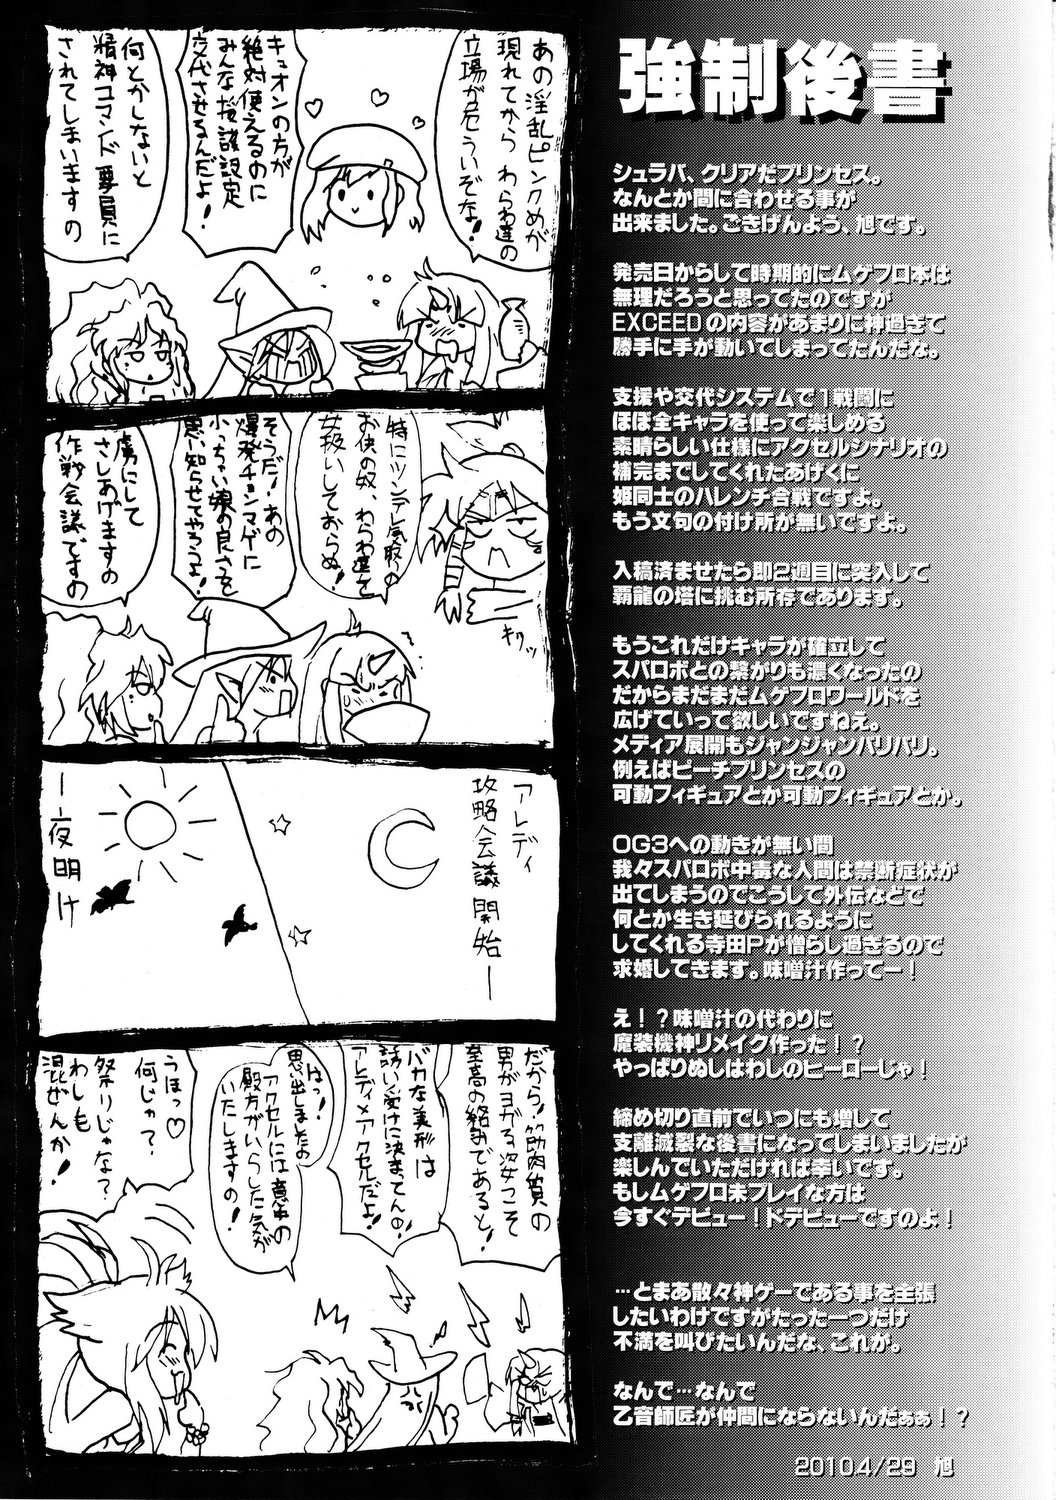 (COMIC1☆4) [FULLMETAL MADNESS (旭)] SHG ~SUPER HARENCHI GASSEN~ (スーパーロボット大戦)